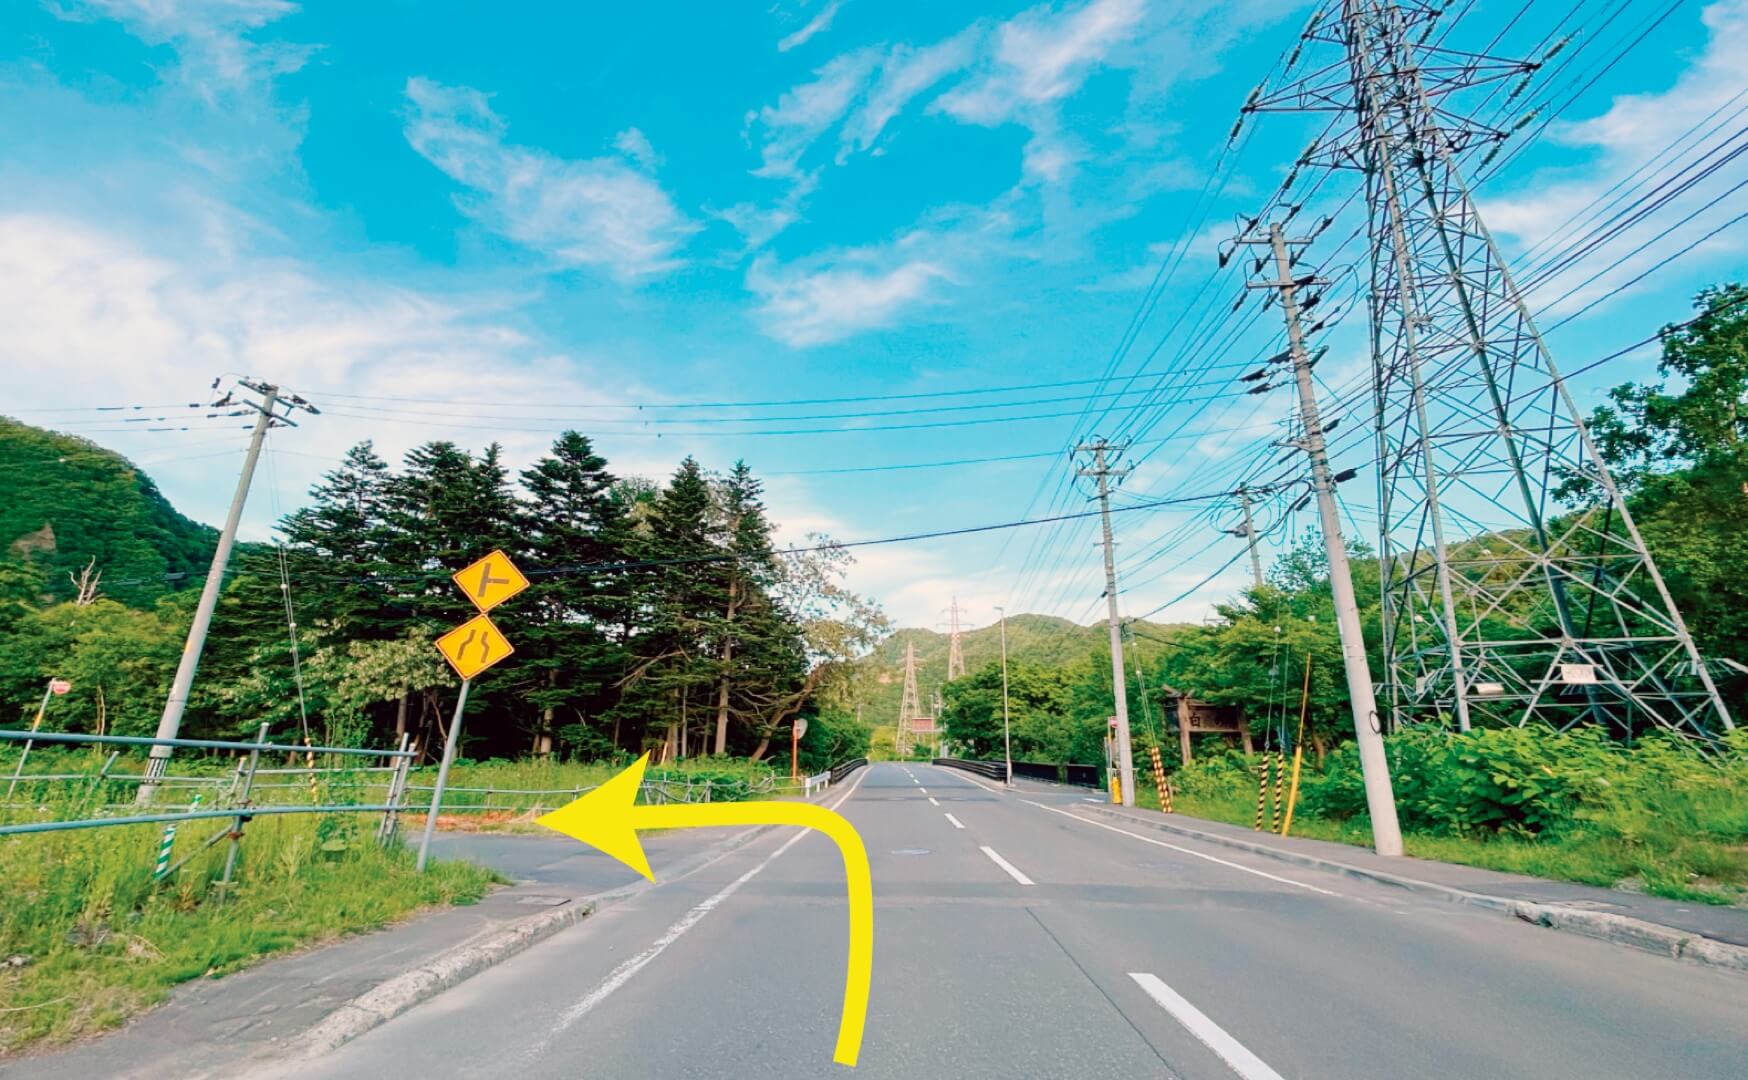 「錦橋」手前の黄色い道路標識を左に曲がります